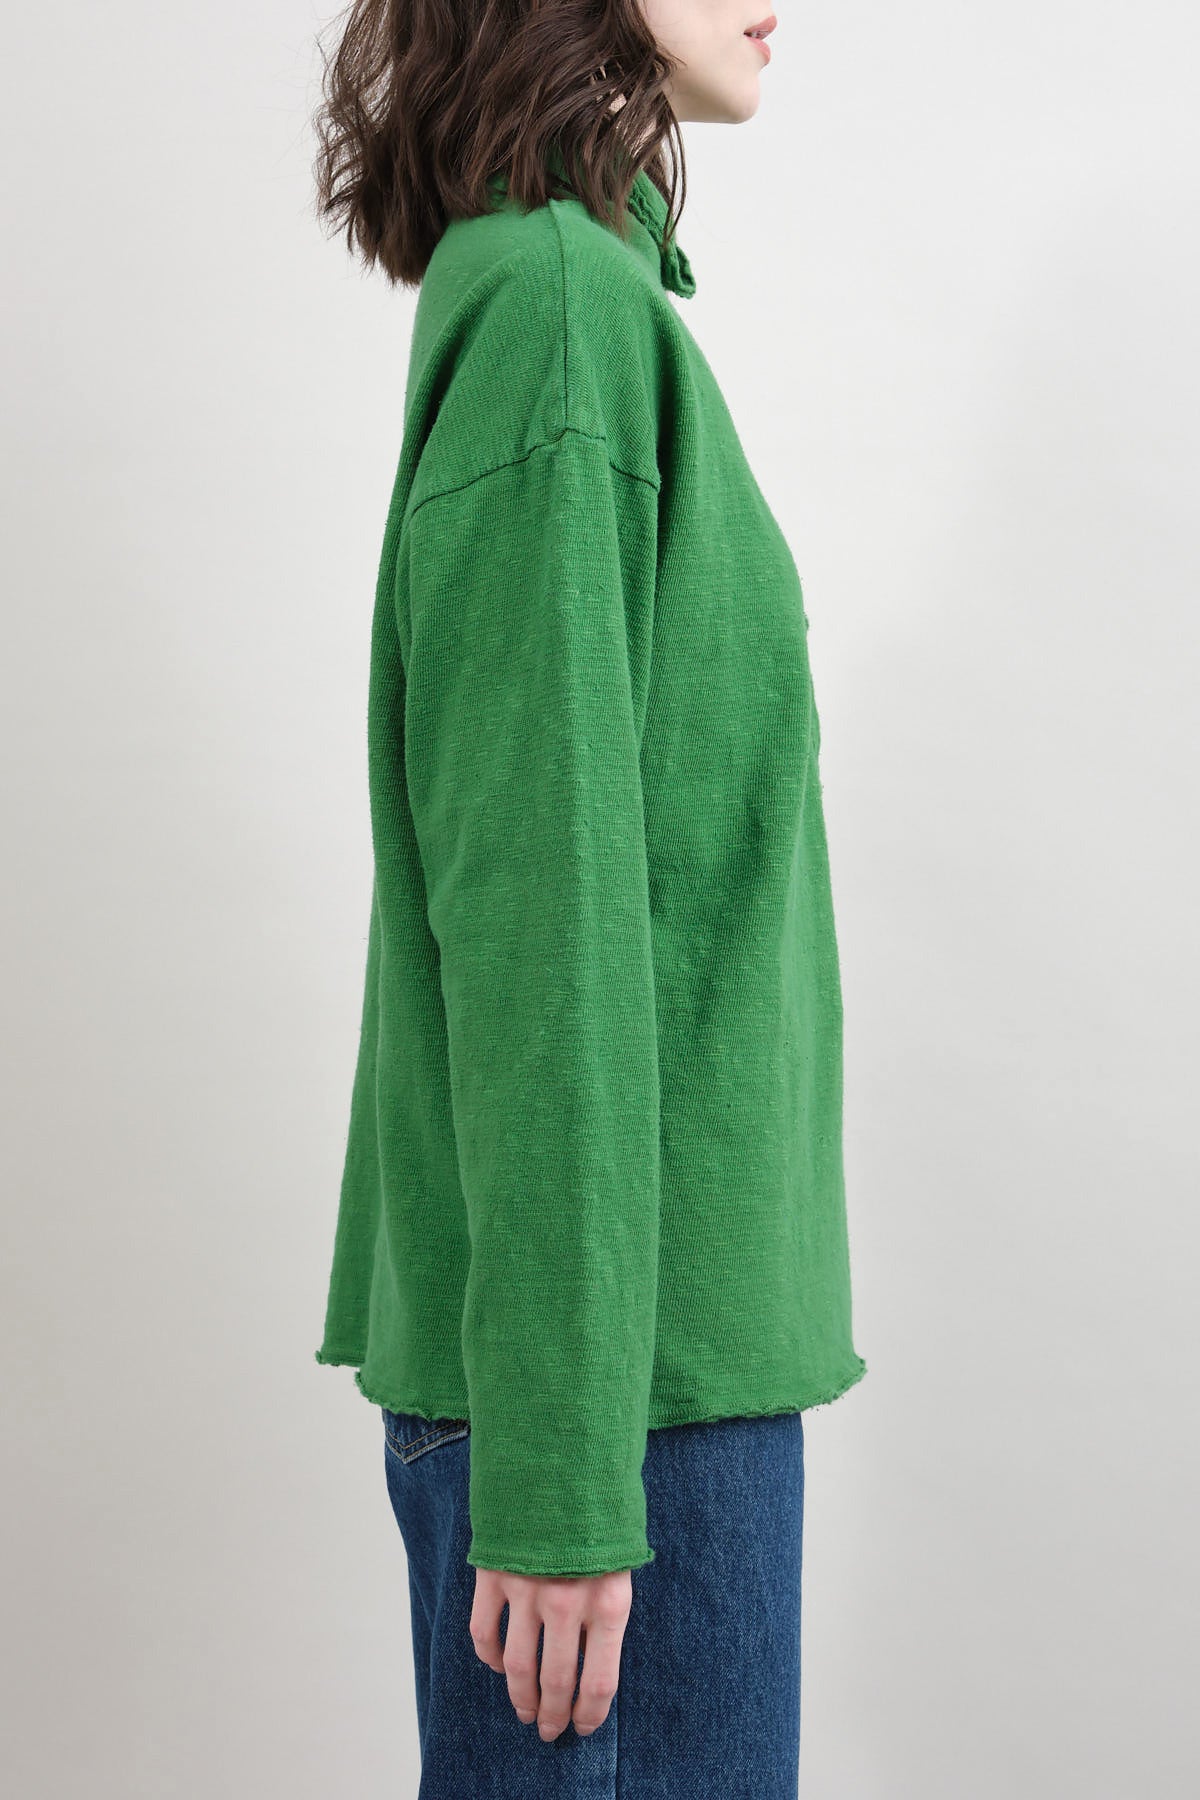 Kapital AMUSE Knit GANDHI 100% Cotton Long Sleeve T in Green